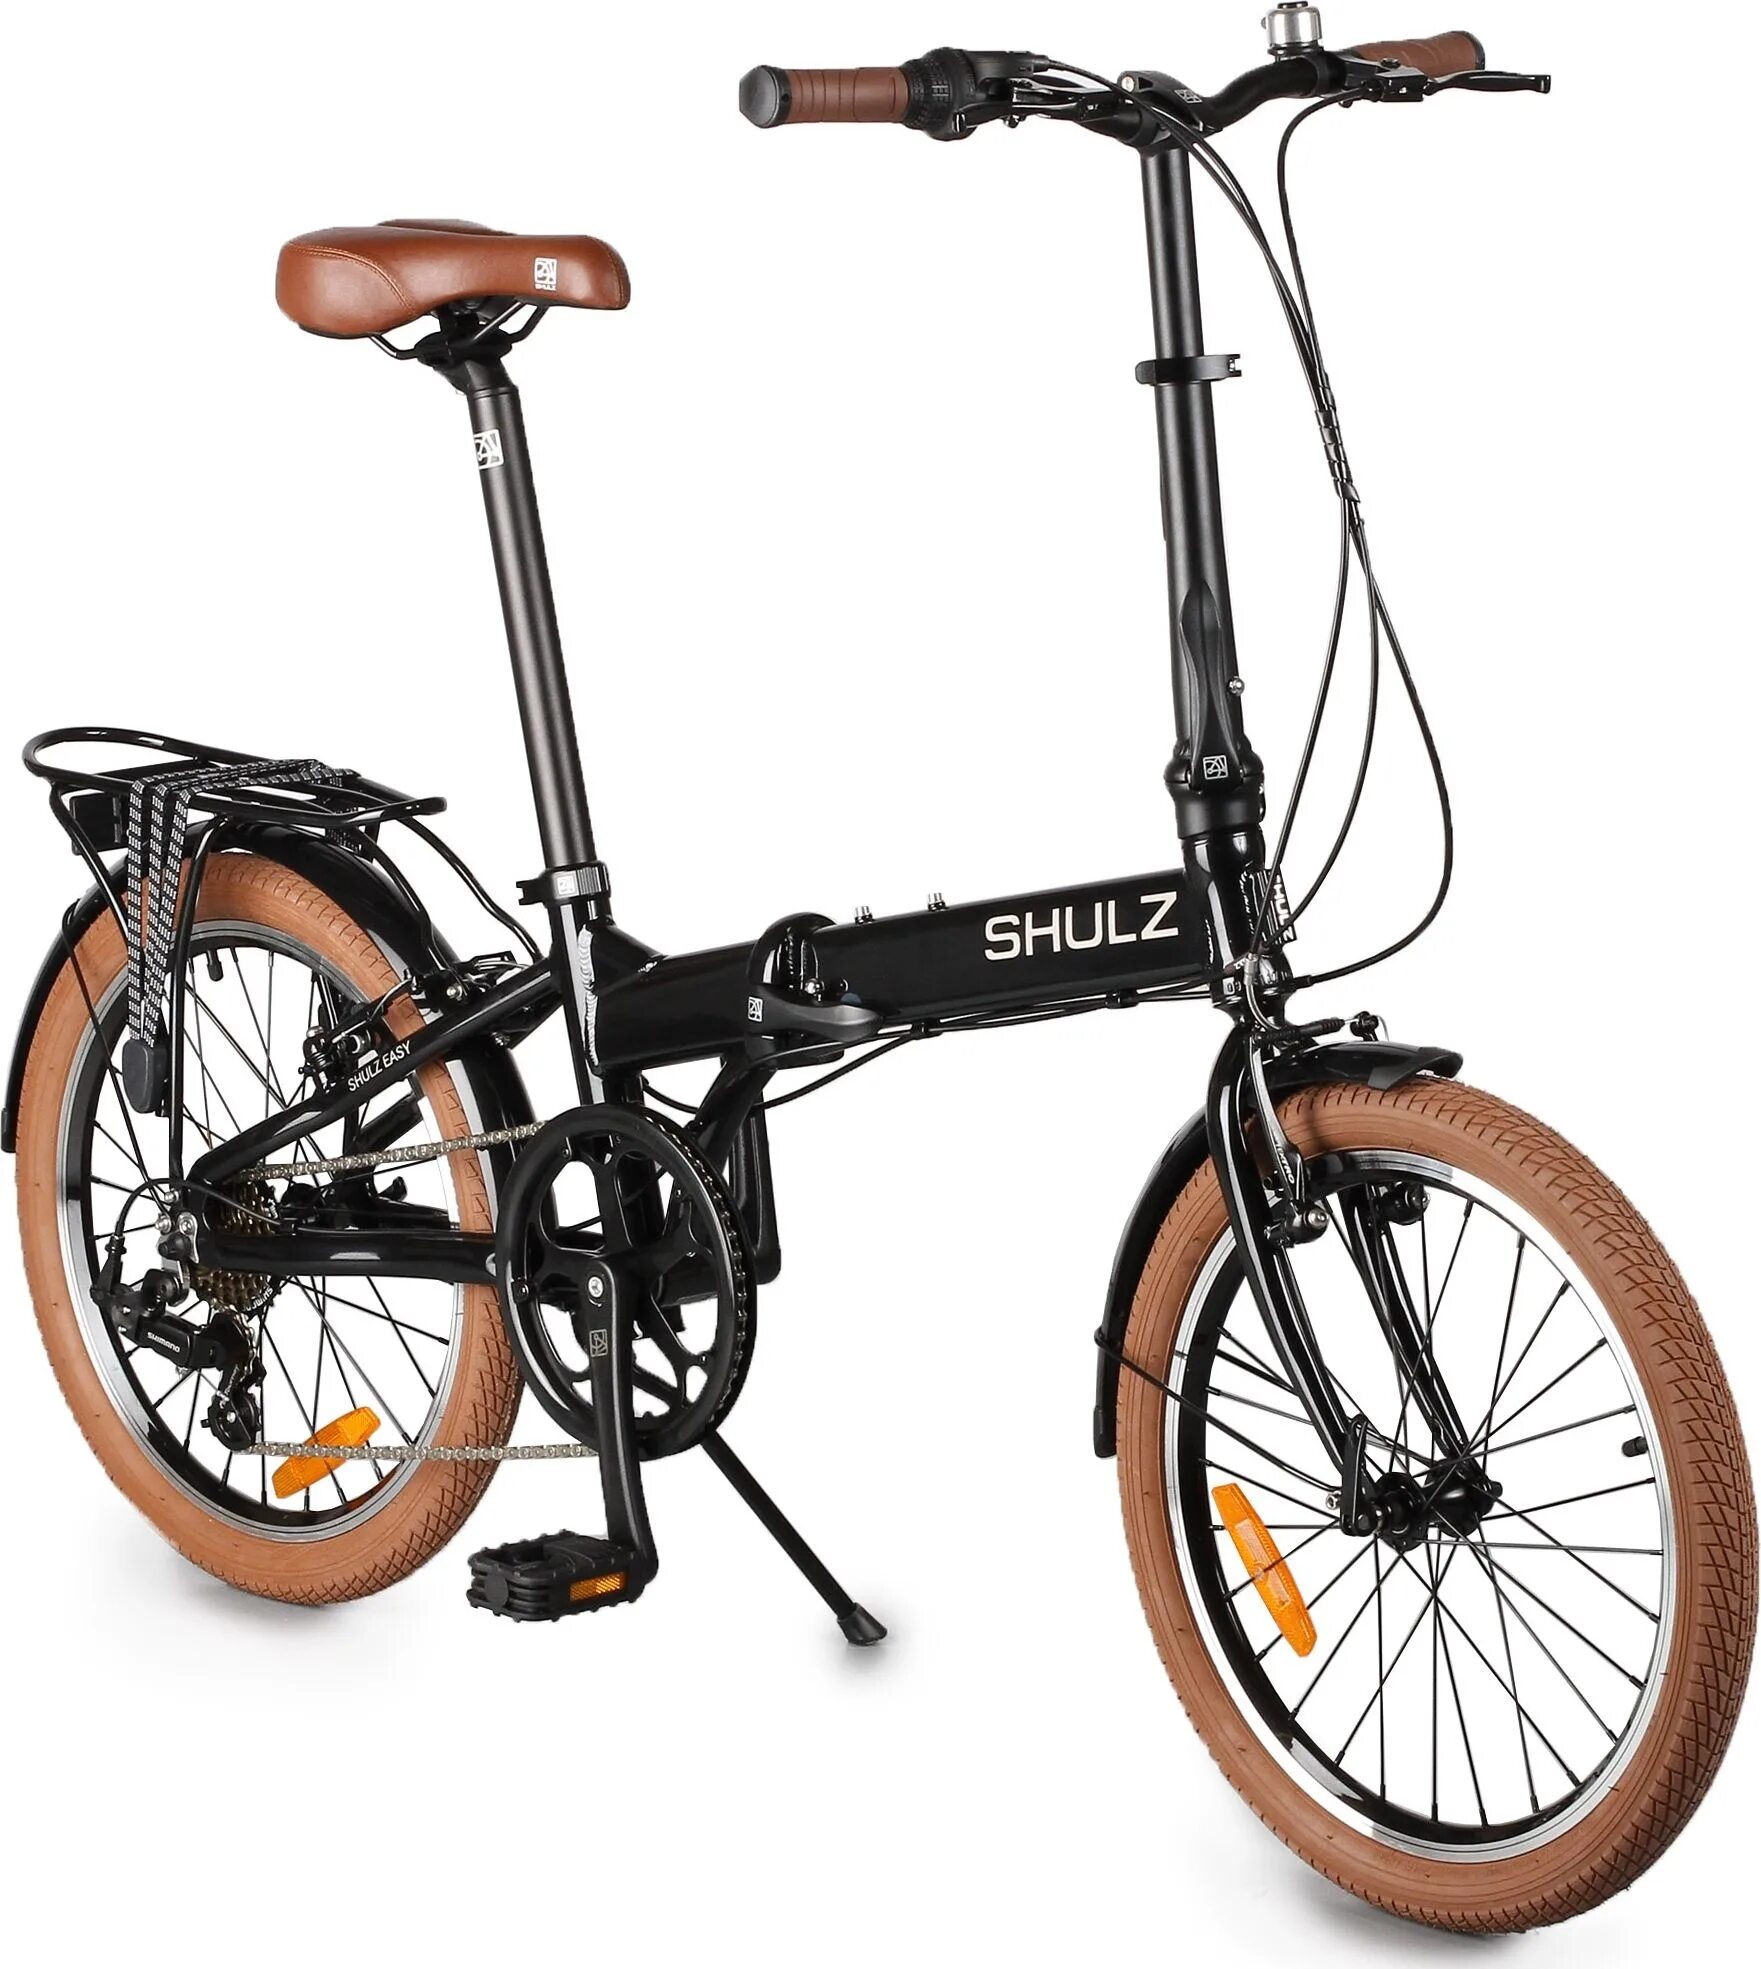 Городской велосипед Shulz easy. Складной велосипед Shulz easy. Городской велосипед Shulz Lentus. Велосипед Шульц складной алюминиевый. Дешевые велосипеды спб купить